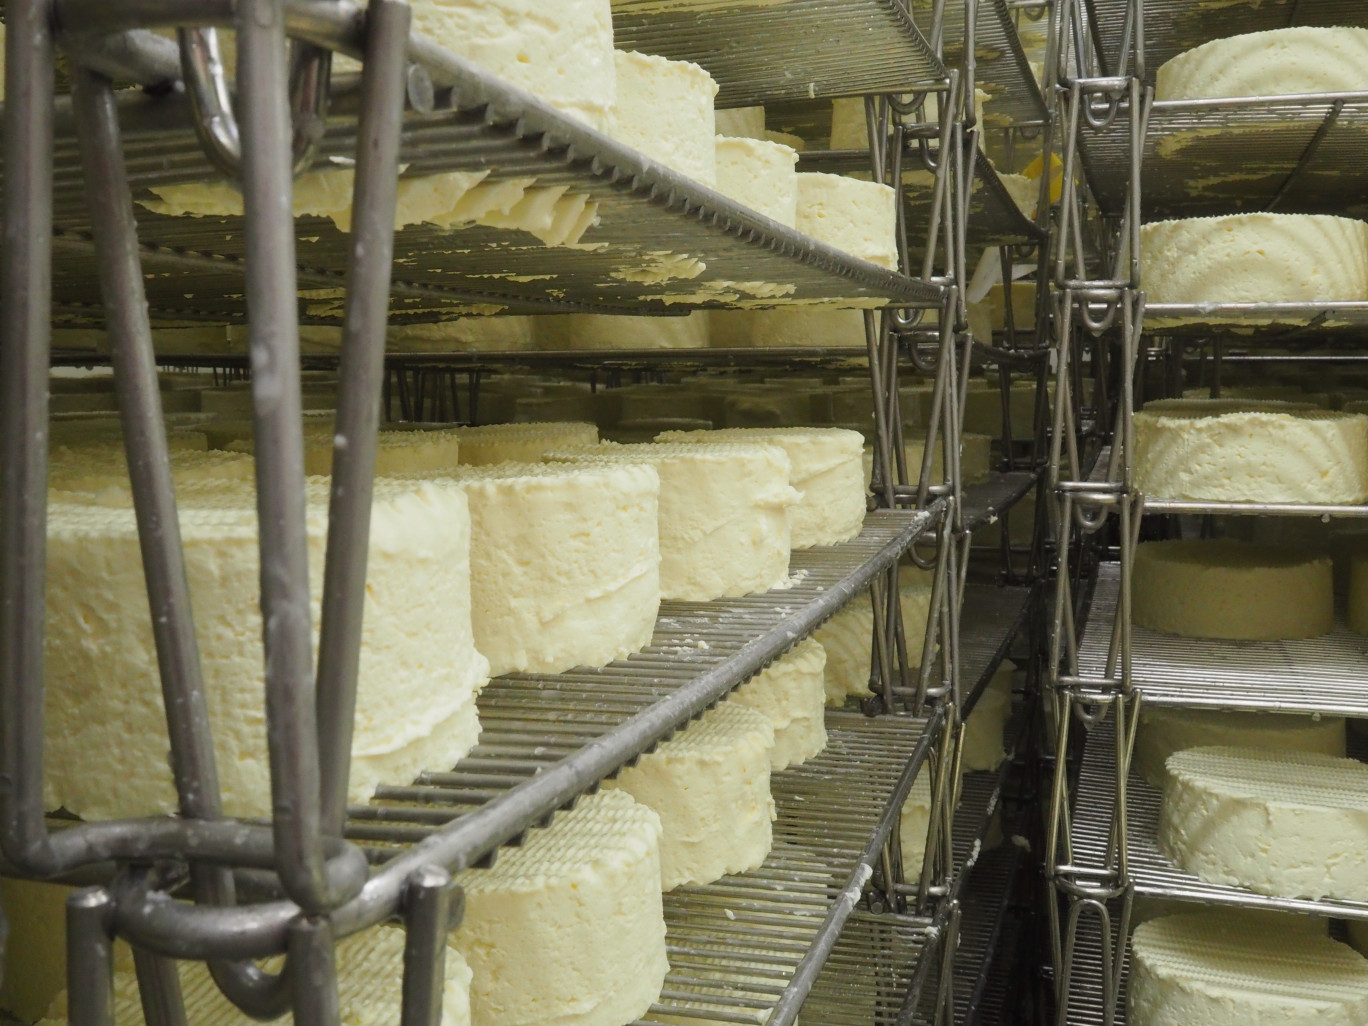 La Fromagerie Delin prévoit un futur investissement pour accroître sa production de fromage double crème. (© Fromagerie Delin)